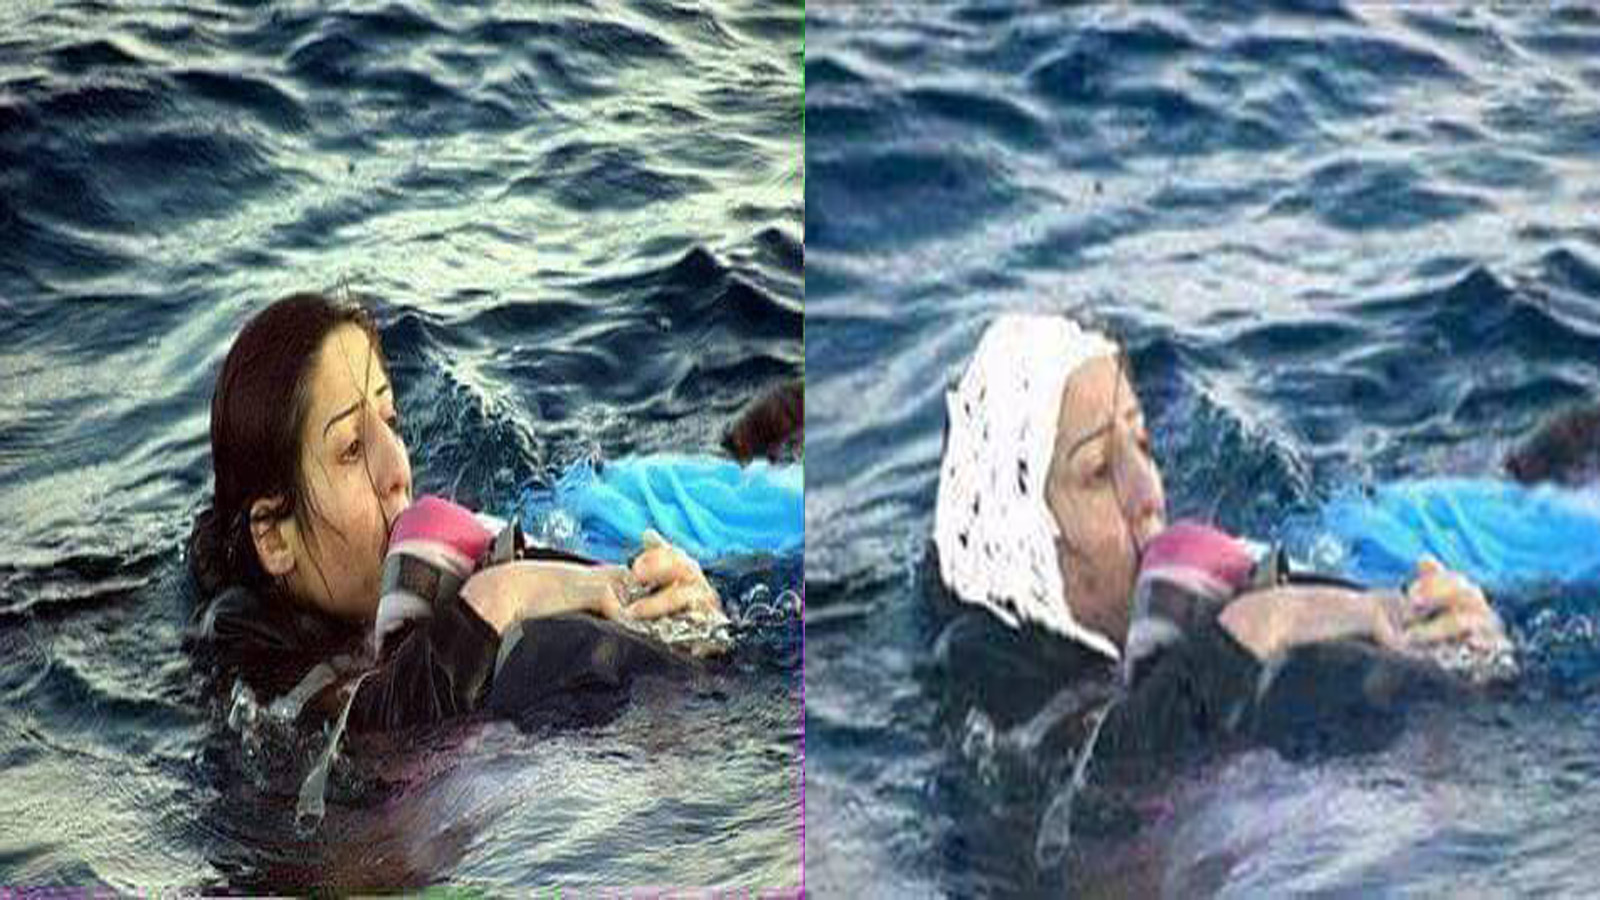 "تحجيب" لاجئة سورية قتلها البحر: طقوس "داعش" في يومياتنا